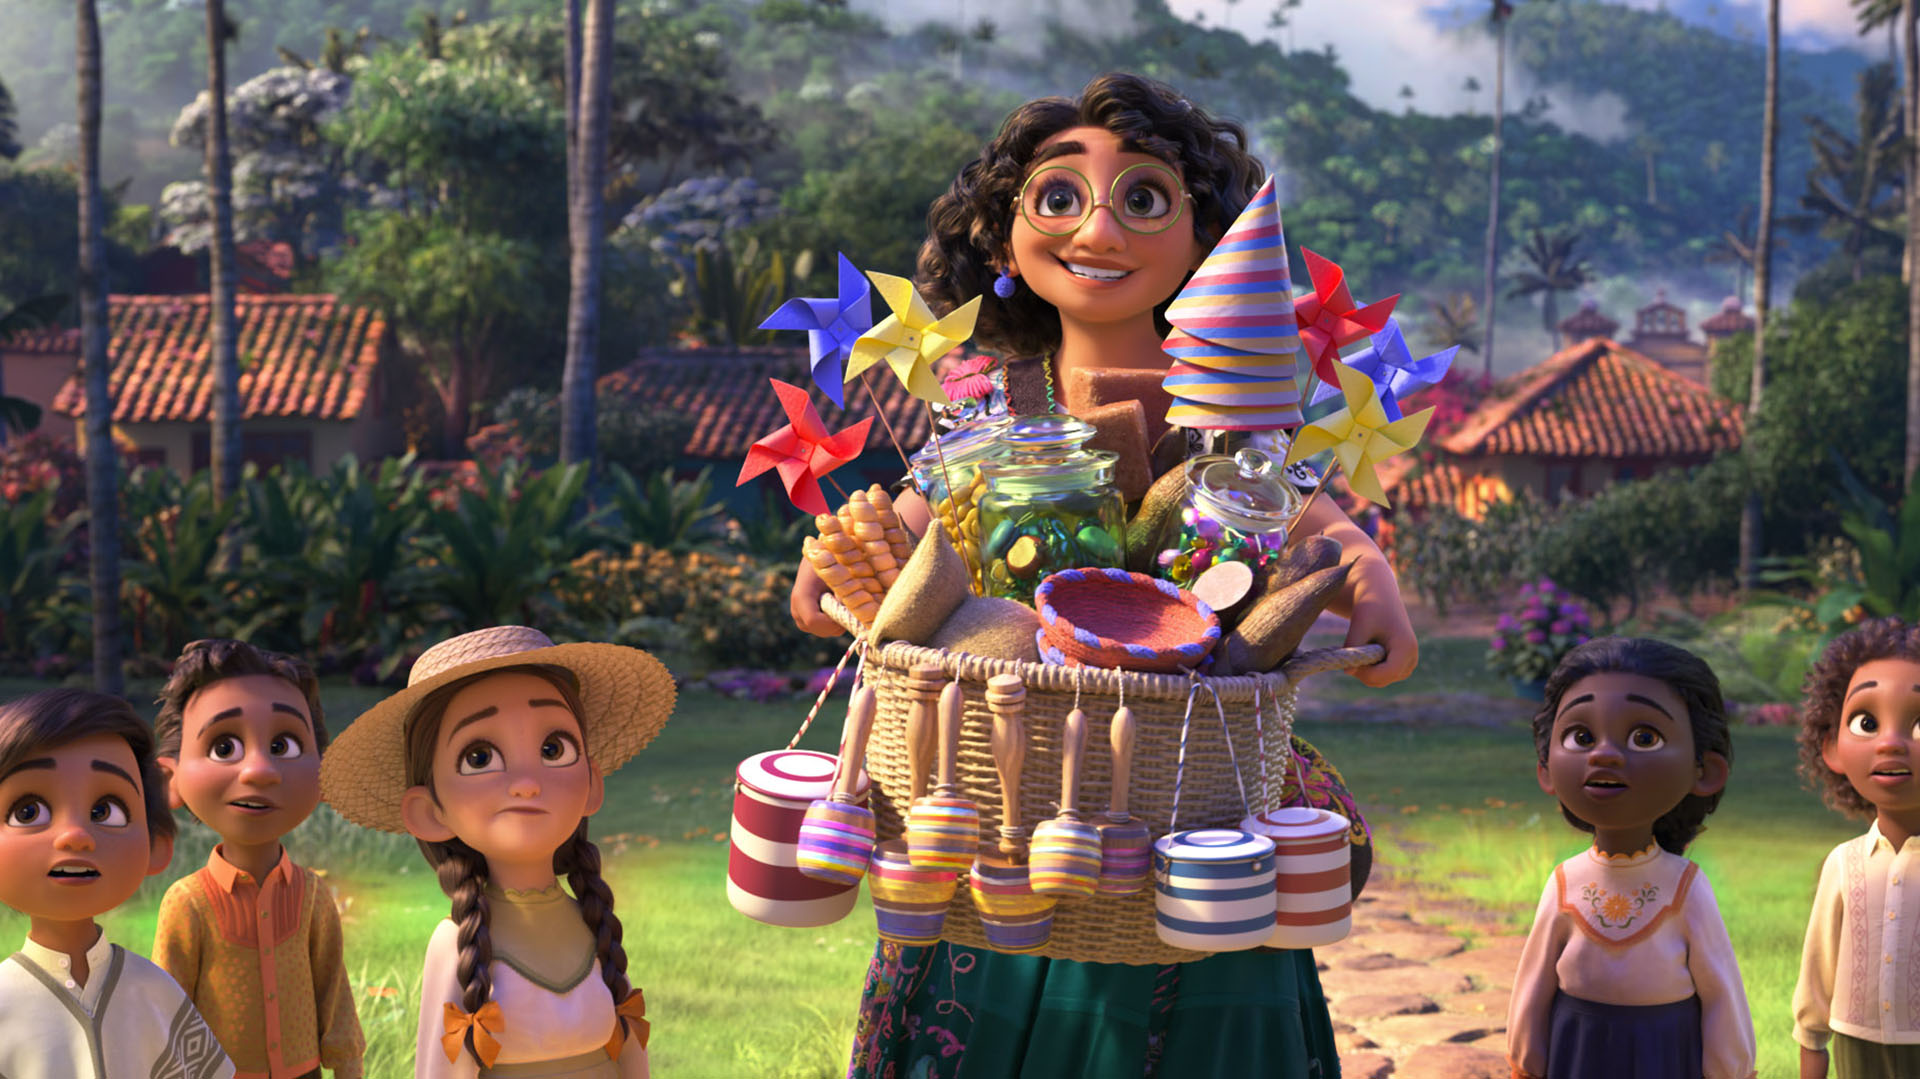 La familia Madrigal es la protagonista del exitoso largometraje de animación "Encanto", ambientado en Colombia. (Disney)